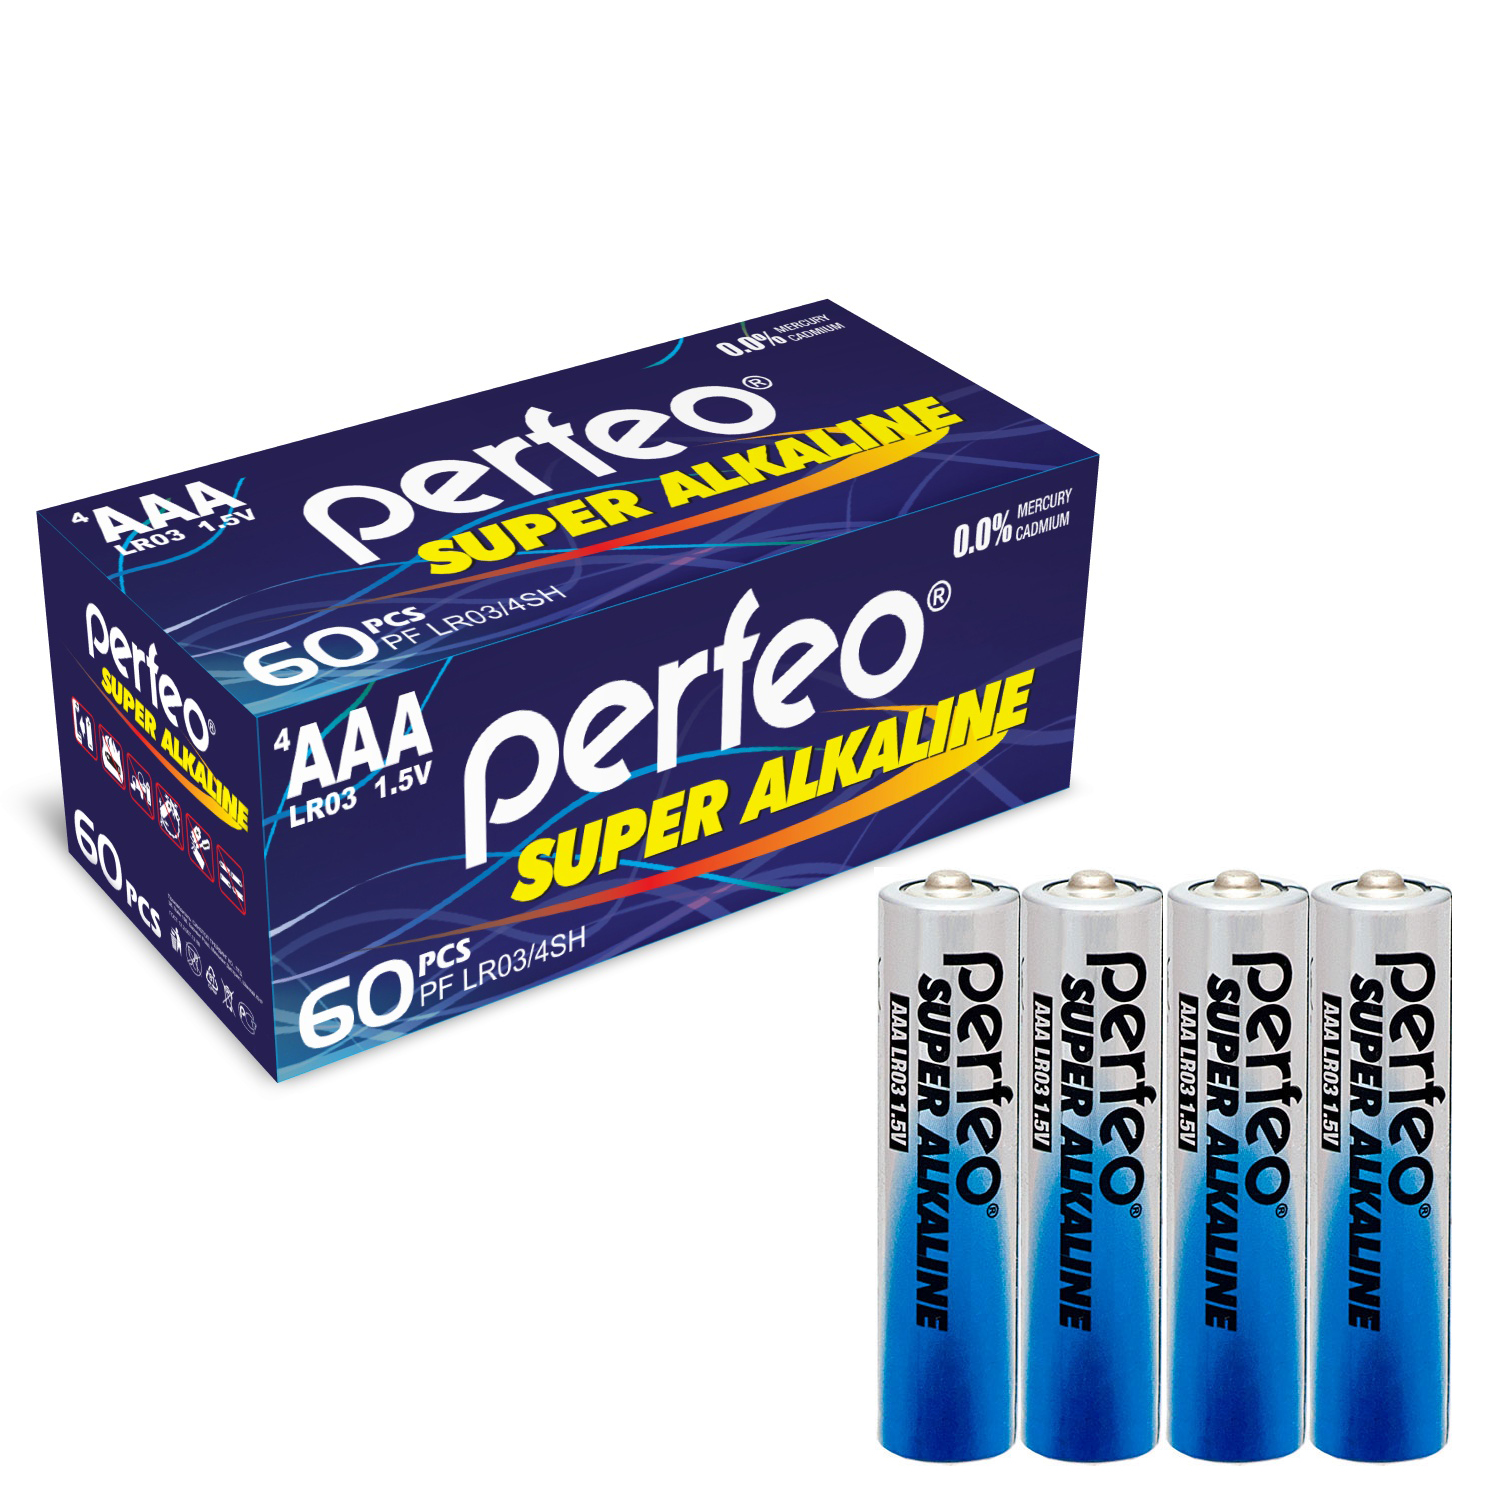 Батарейка Perfeo LR03/4SH Super Alkaline 60 шт батарейки perfeo super alkaline ааа lr03 отрывные 10 шт